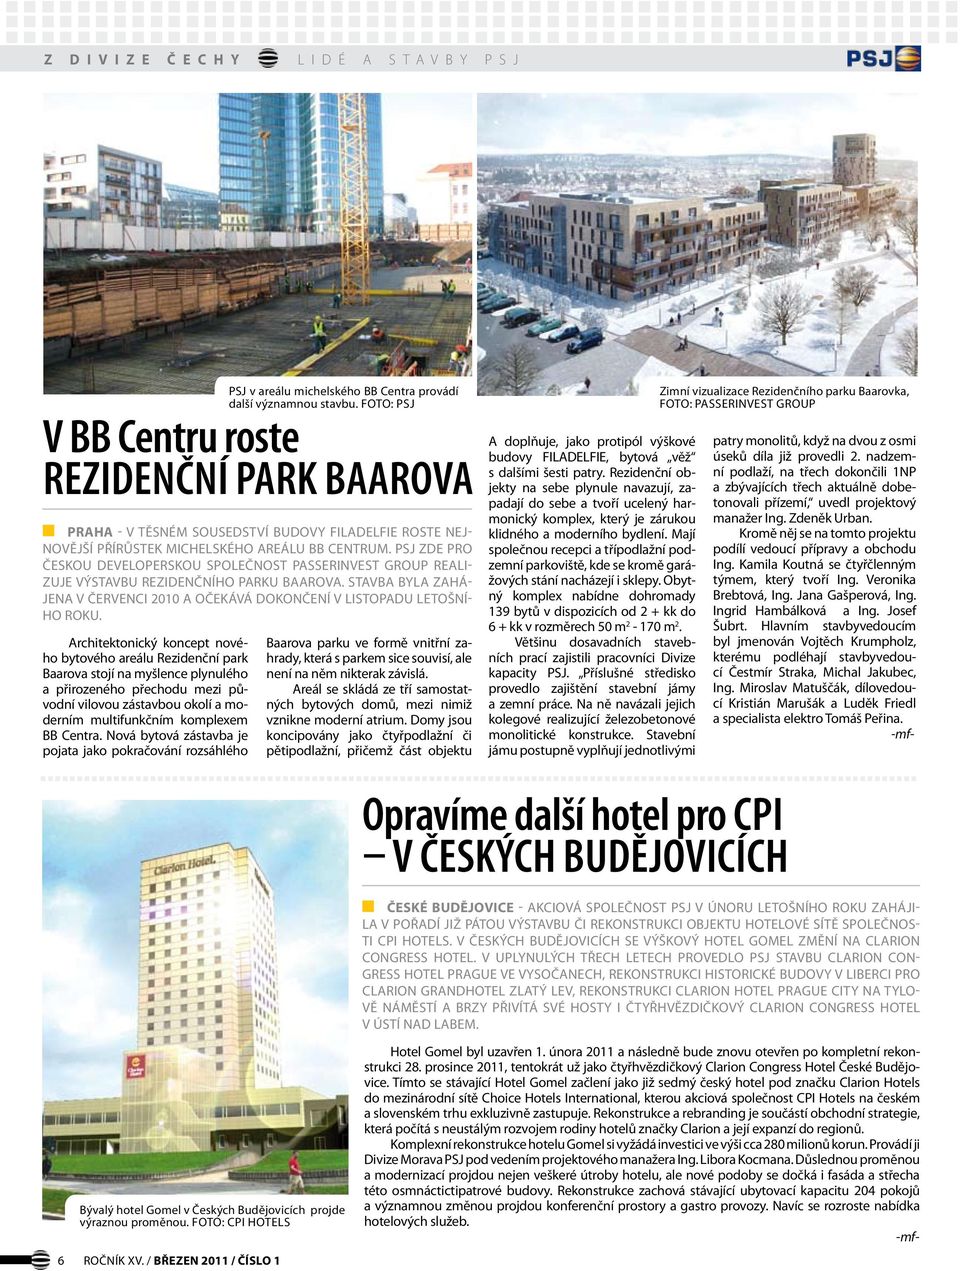 Architektonický koncept nového bytového areálu Rezidenční park Baarova stojí na myšlence plynulého a přirozeného přechodu mezi původní vilovou zástavbou okolí a moderním multifunkčním komplexem BB